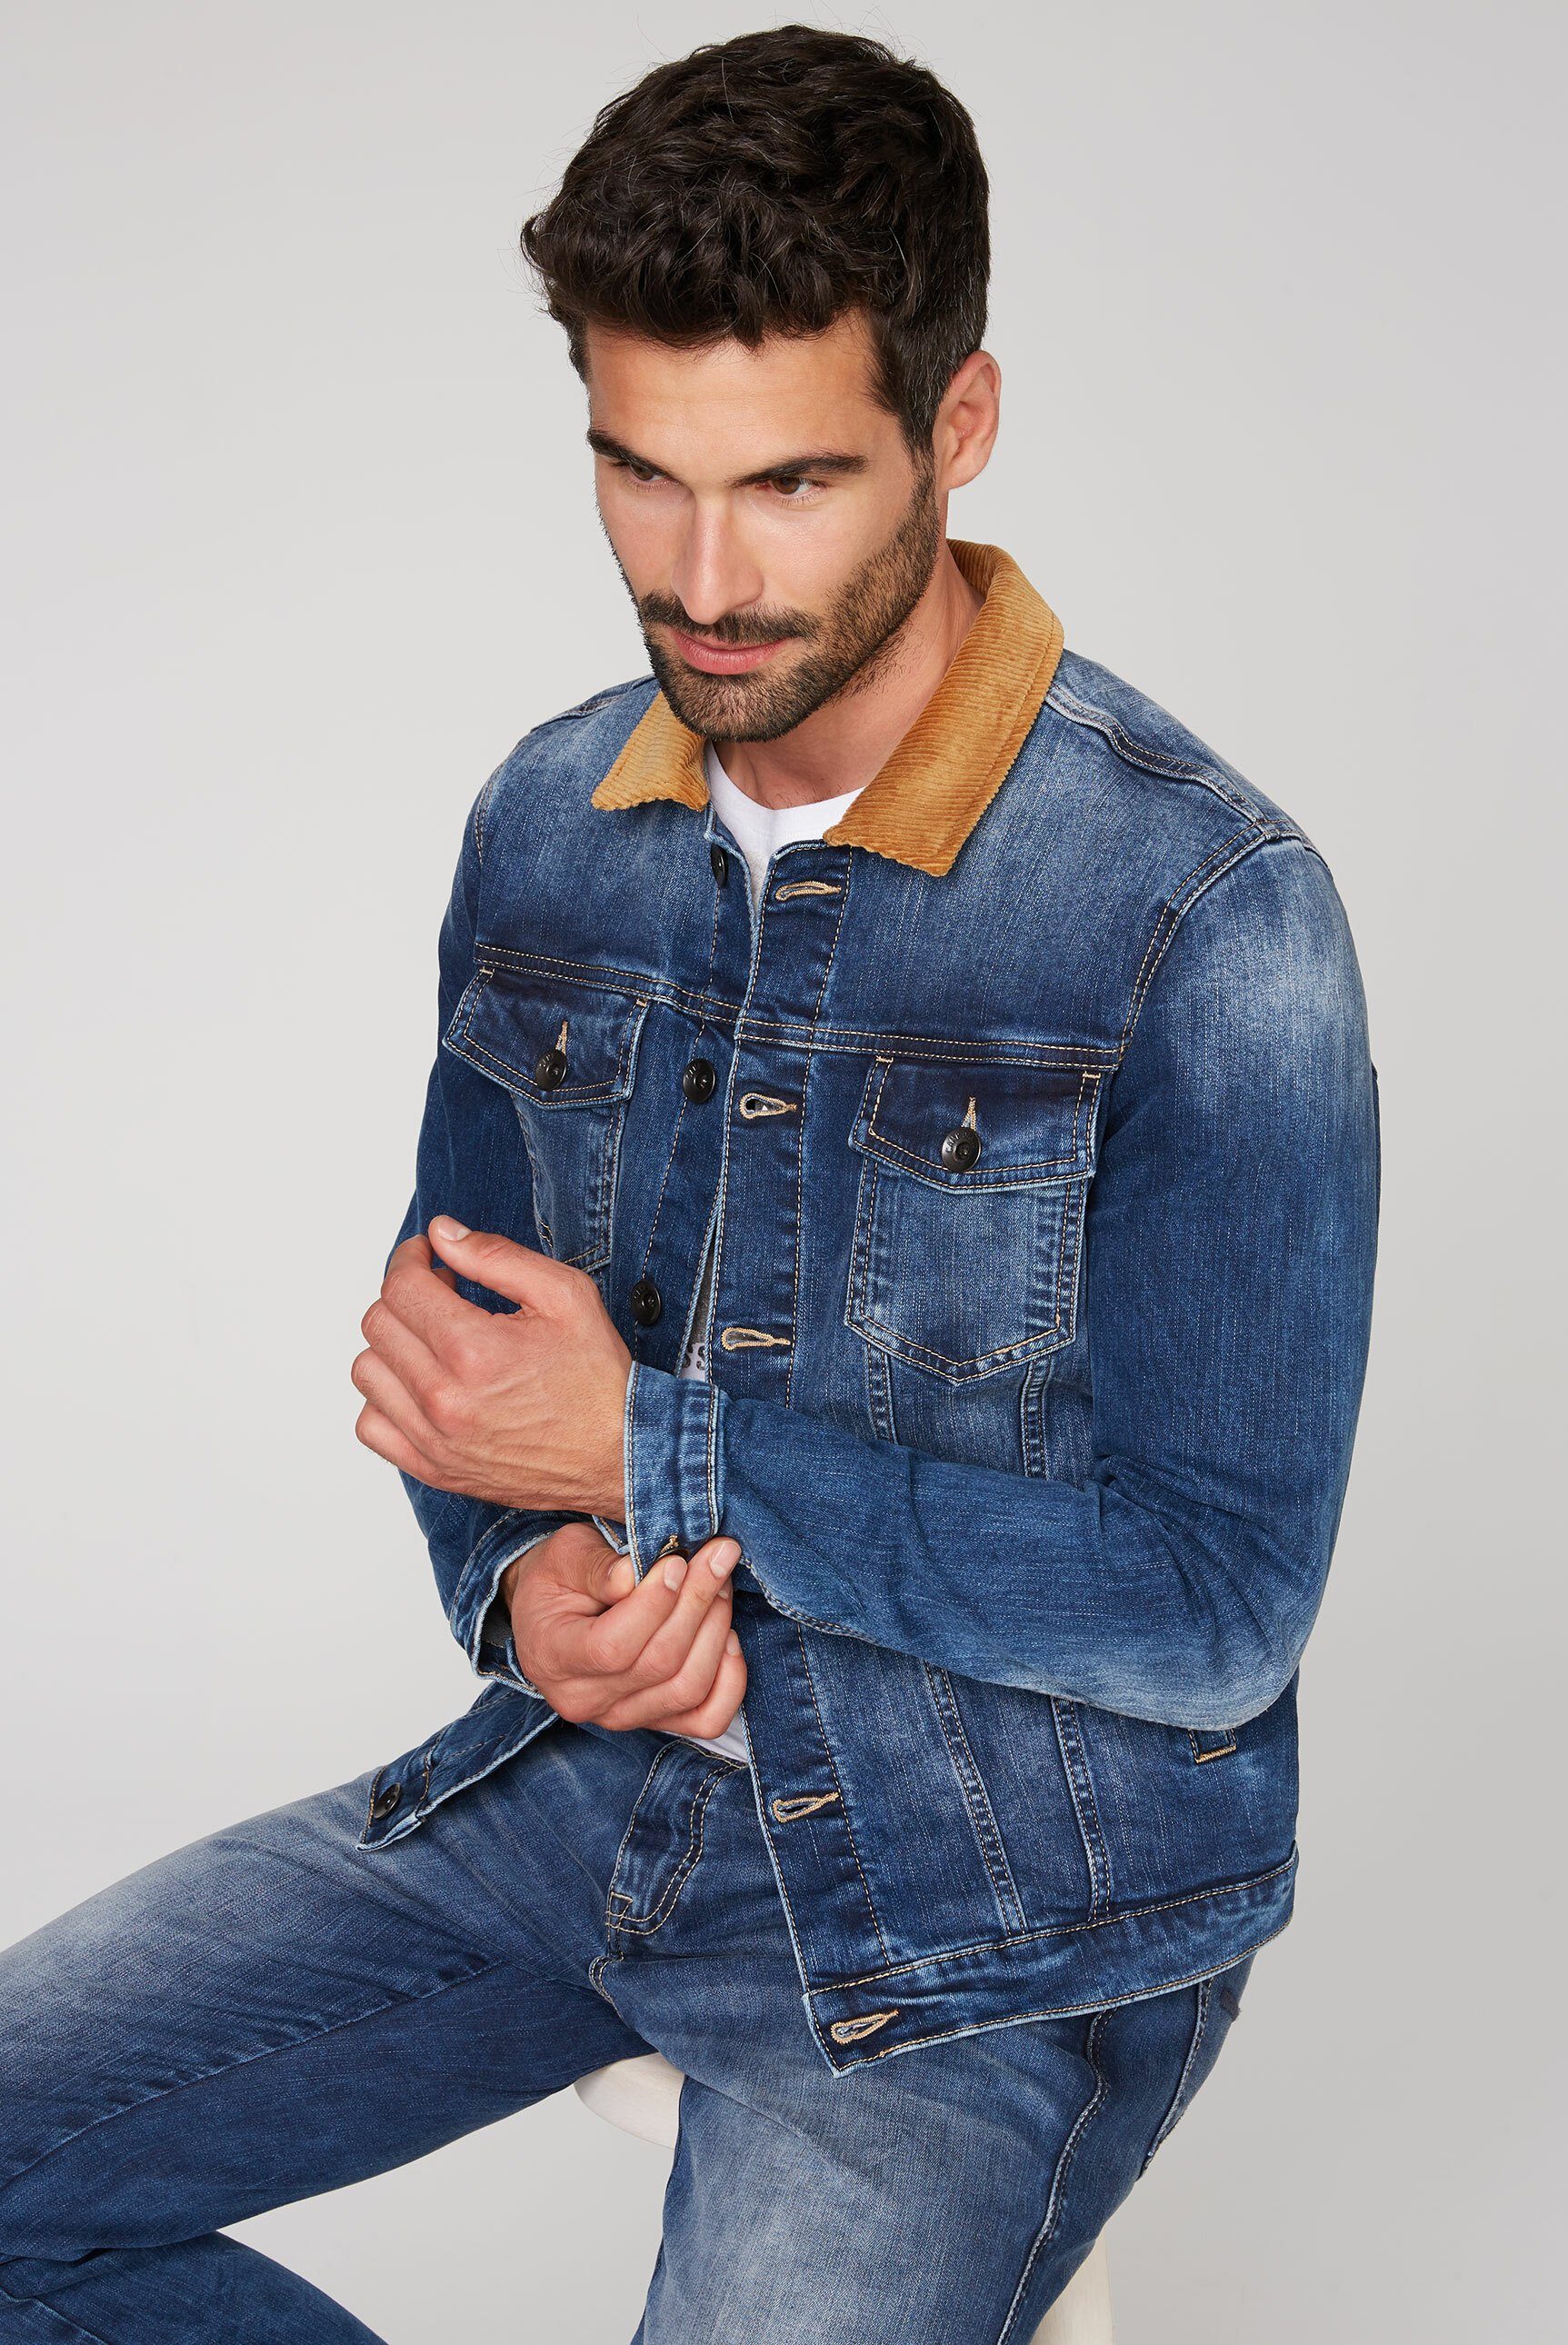 CAMP DAVID Jeansjacke mit Cord-Kragen, Kragen aus Cord online kaufen | OTTO